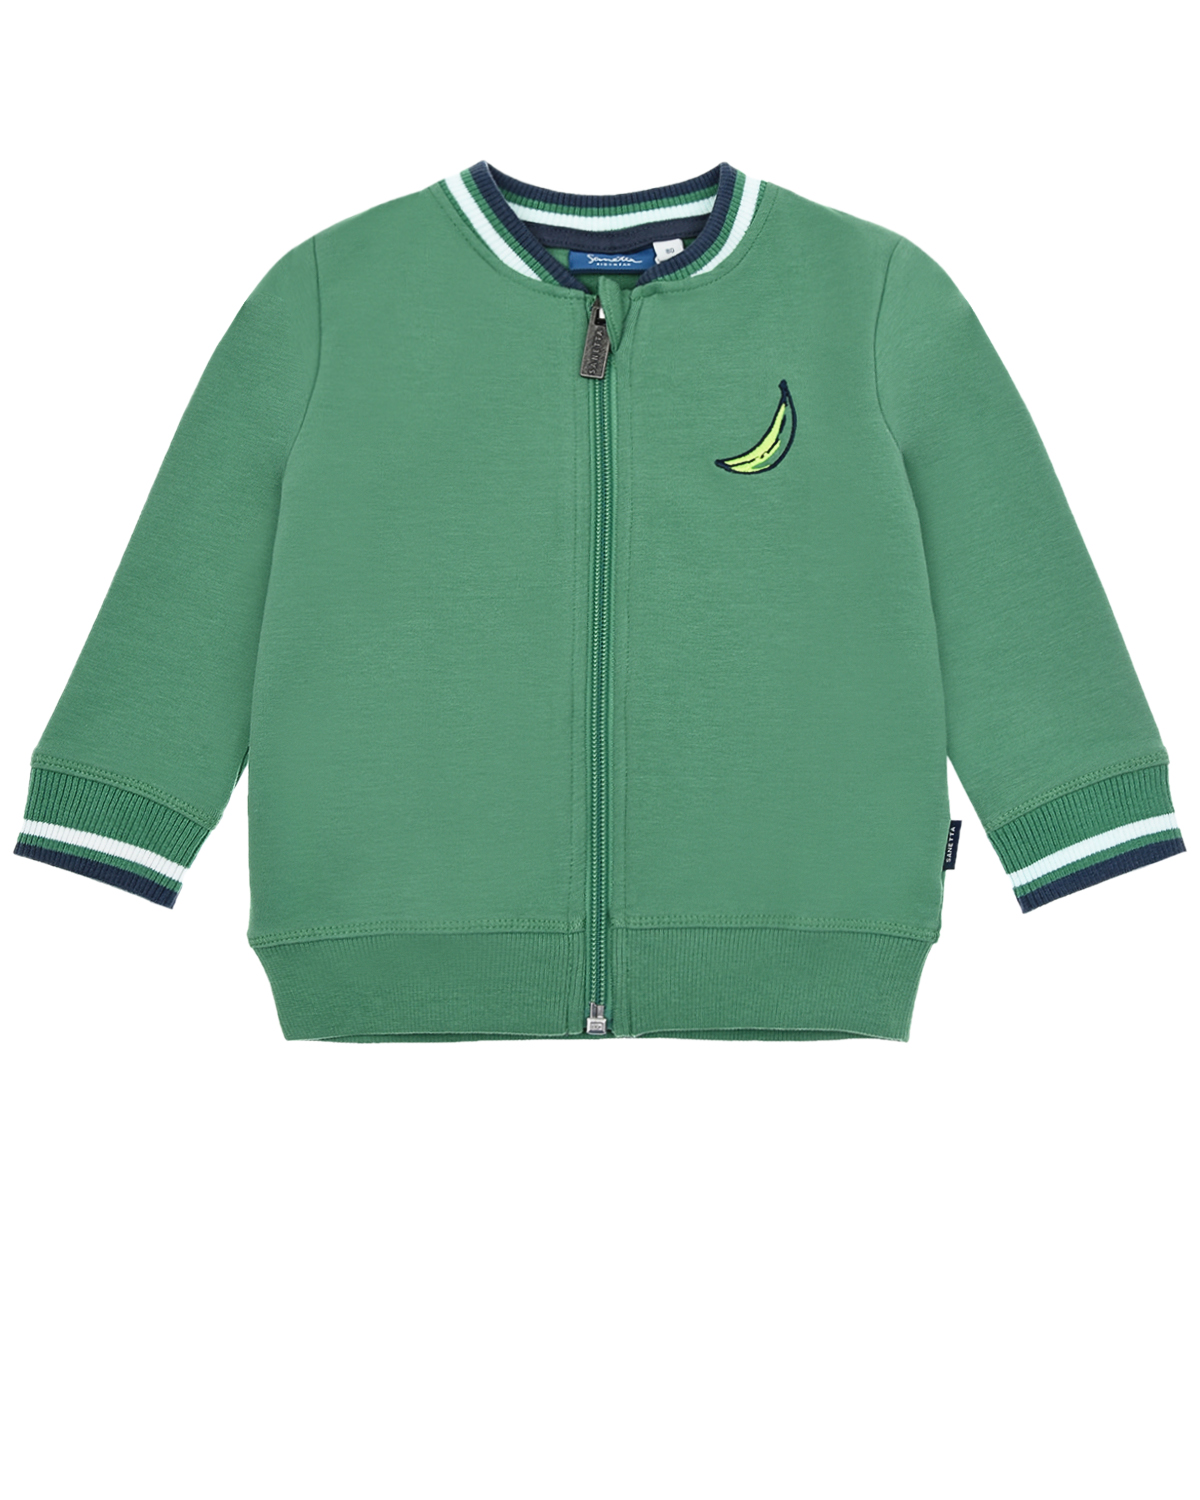 Зеленая спортивная куртка с принтом "обезьяна" Sanetta Kidswear детская, размер 62, цвет зеленый - фото 1